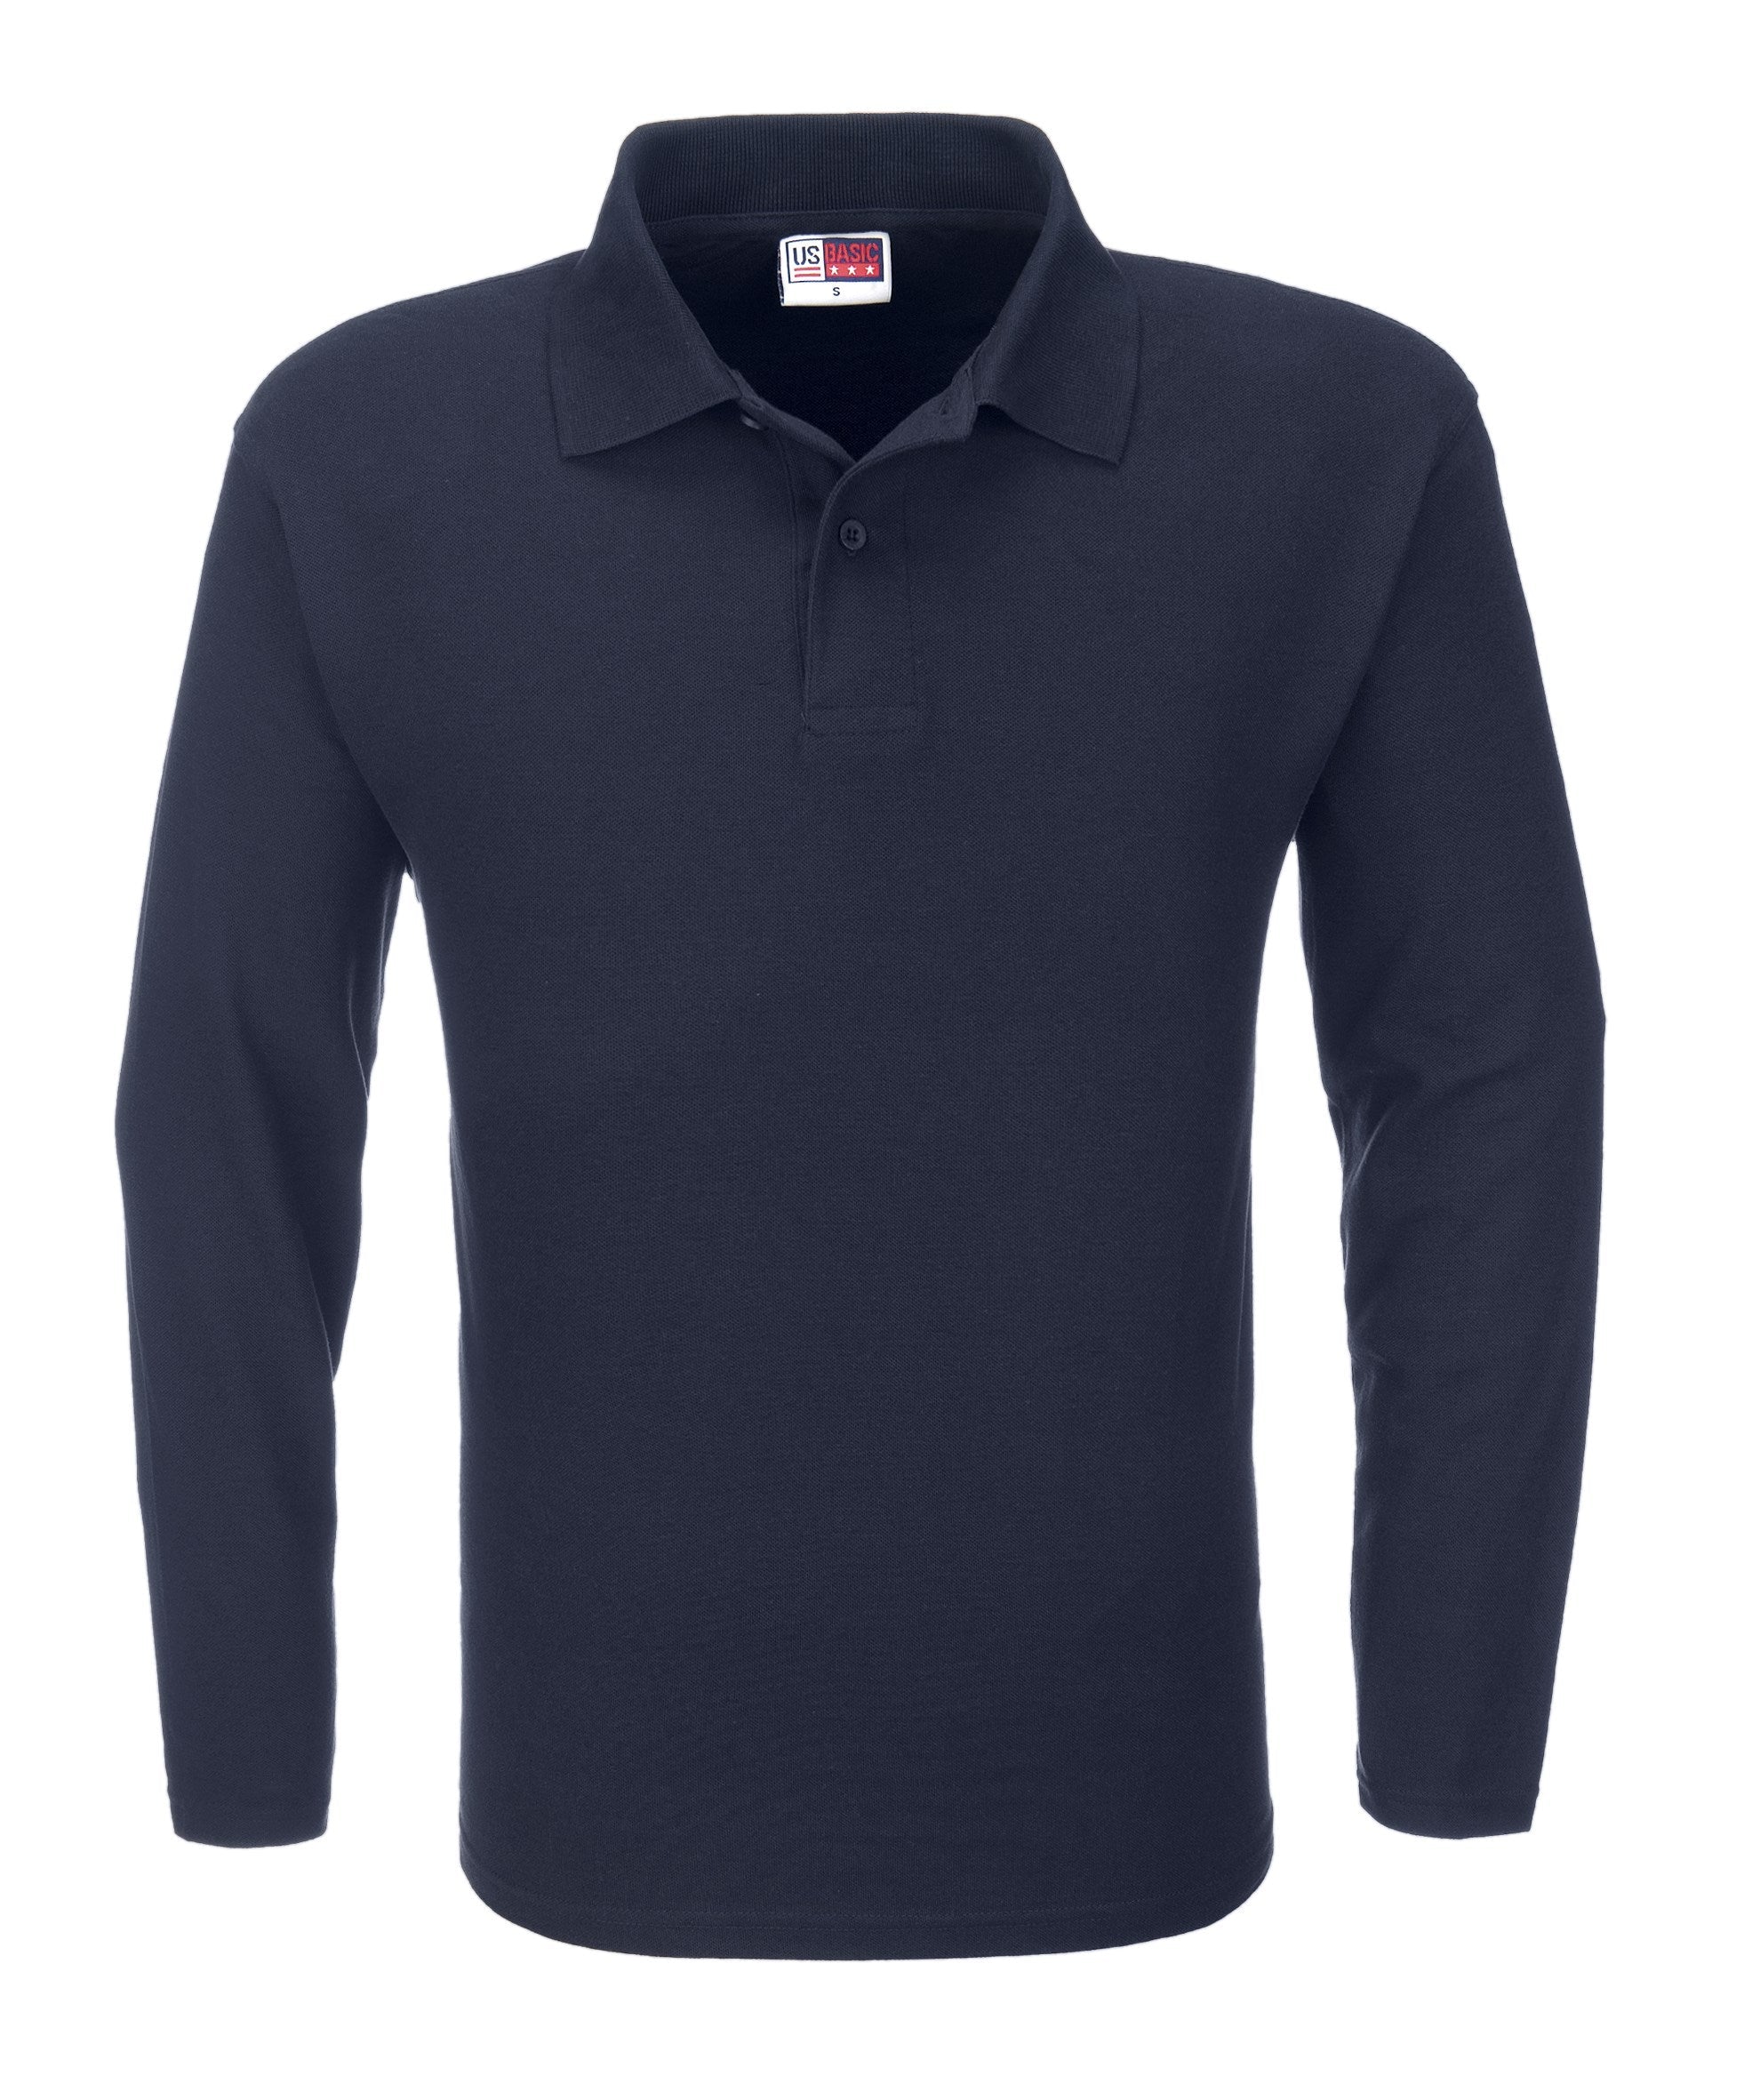 Mens Long Sleeve Boston Golf Shirt - Black Only-2XL-Navy-N